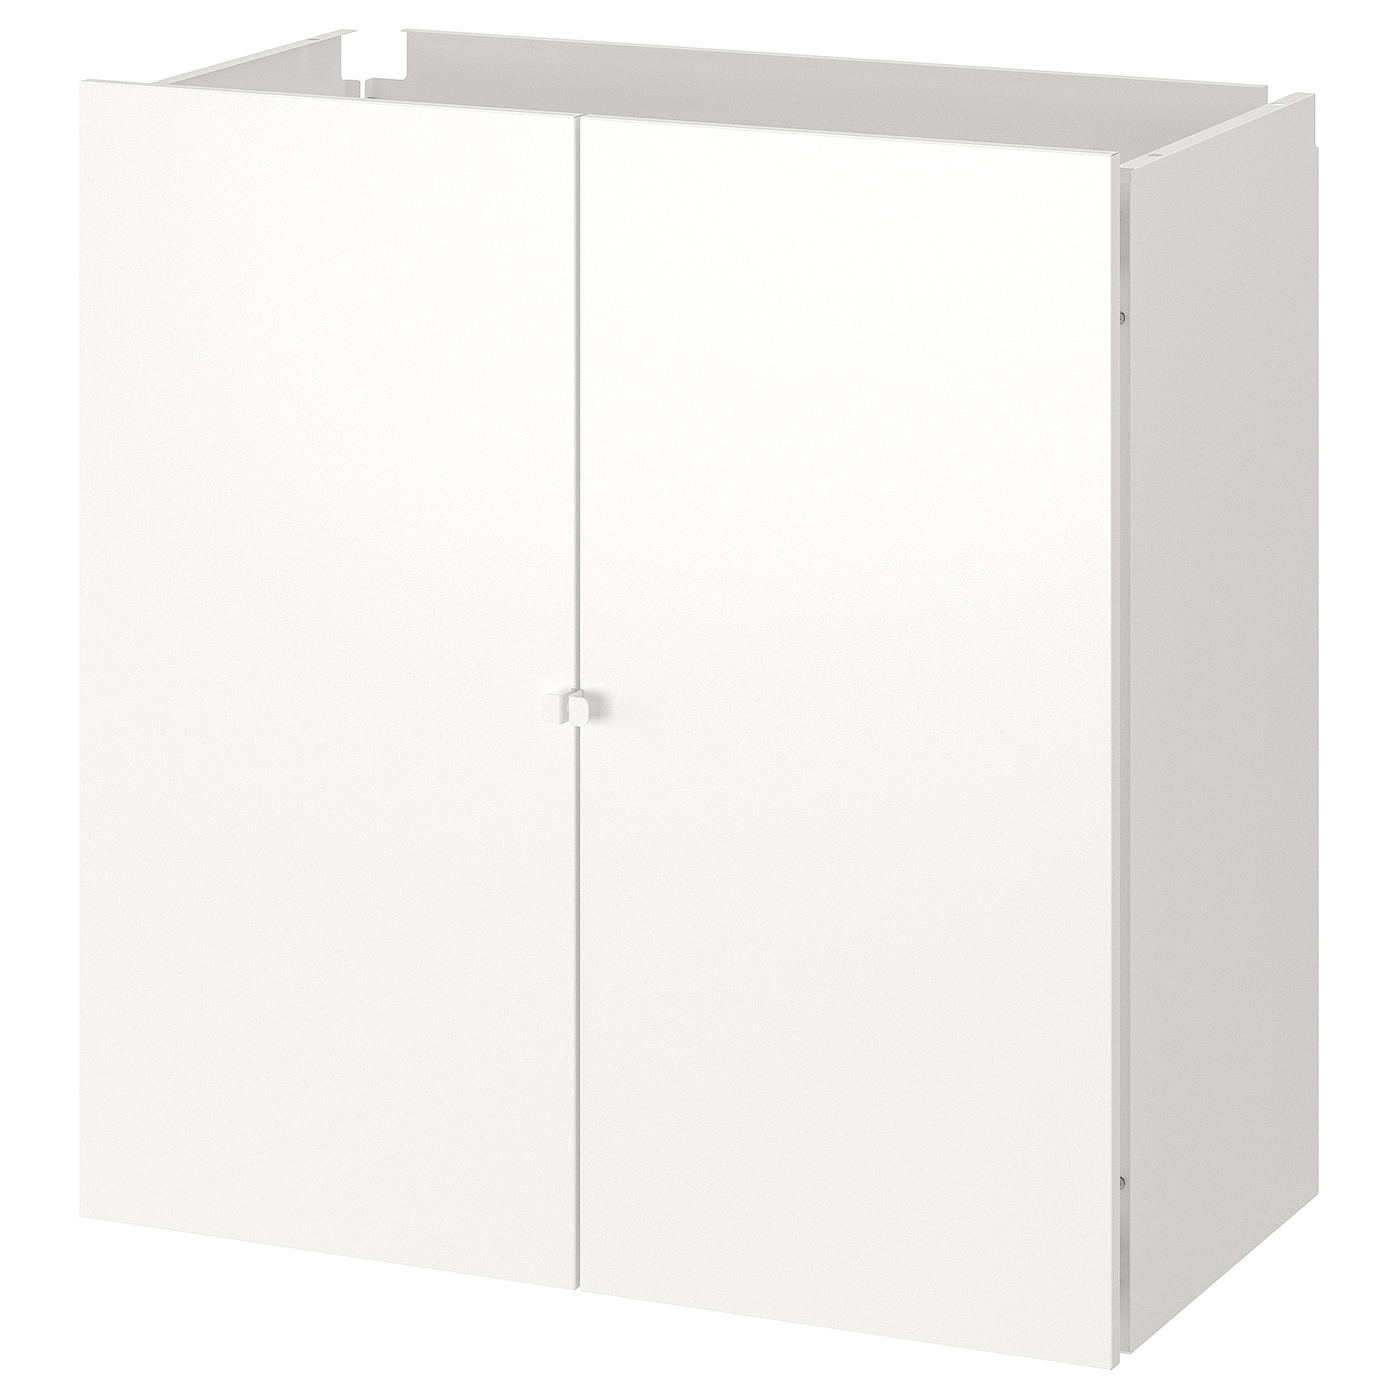 Комплект дверей и стенок для стеллажа - JOSTEIN IKEA/ЙОСТЕЙН  ИКЕА, 82х80 см, белый